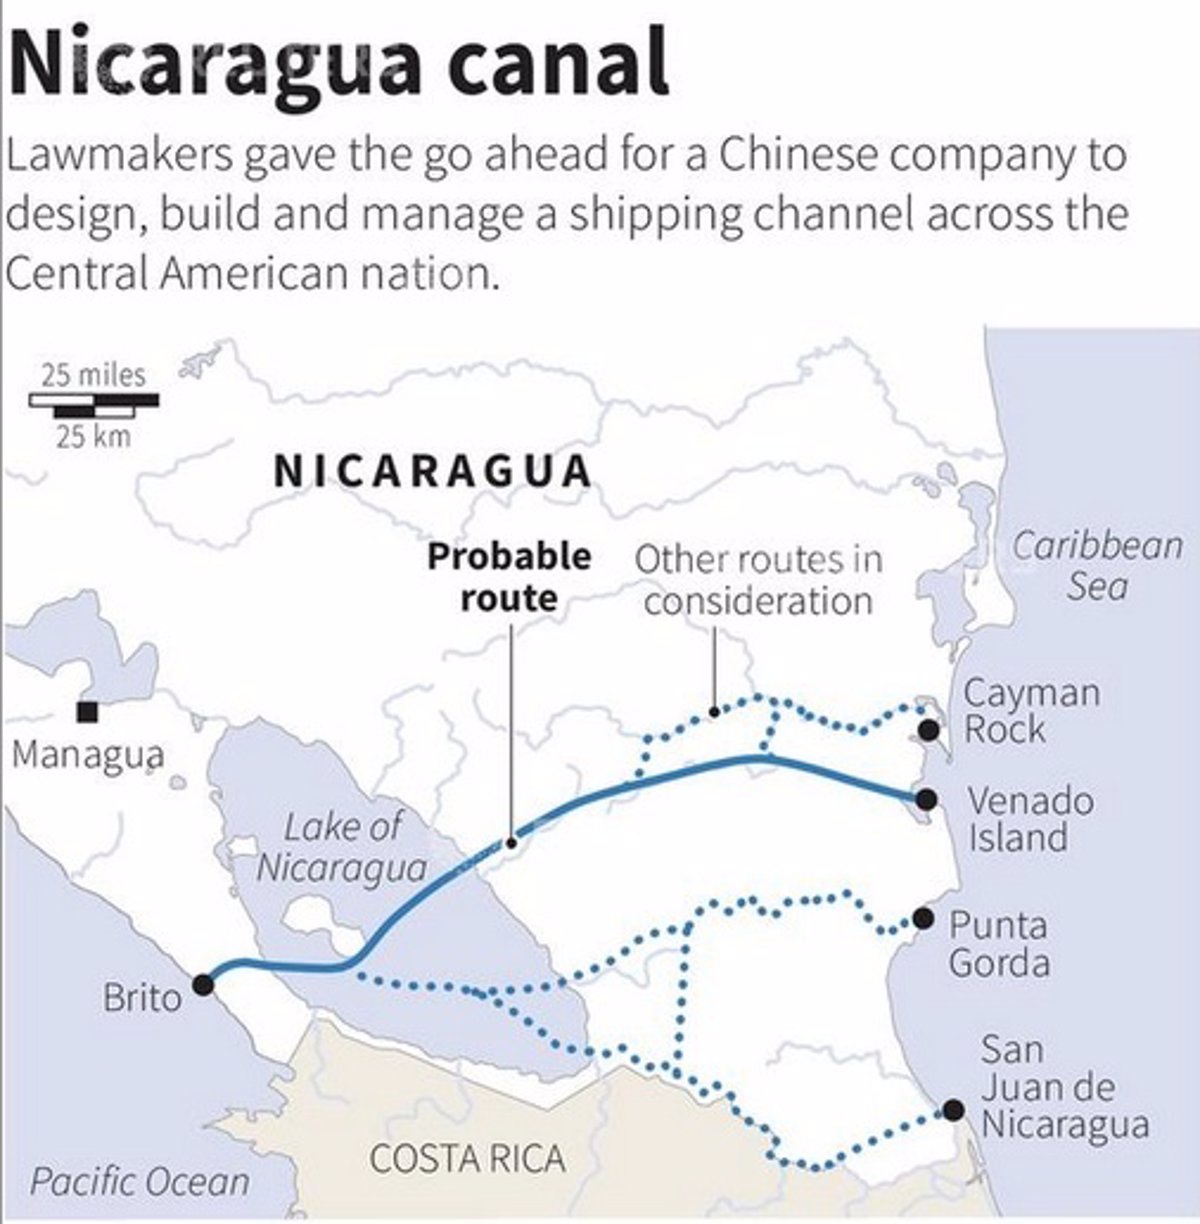 en-qu-consiste-el-proyecto-del-canal-interoce-nico-de-nicaragua